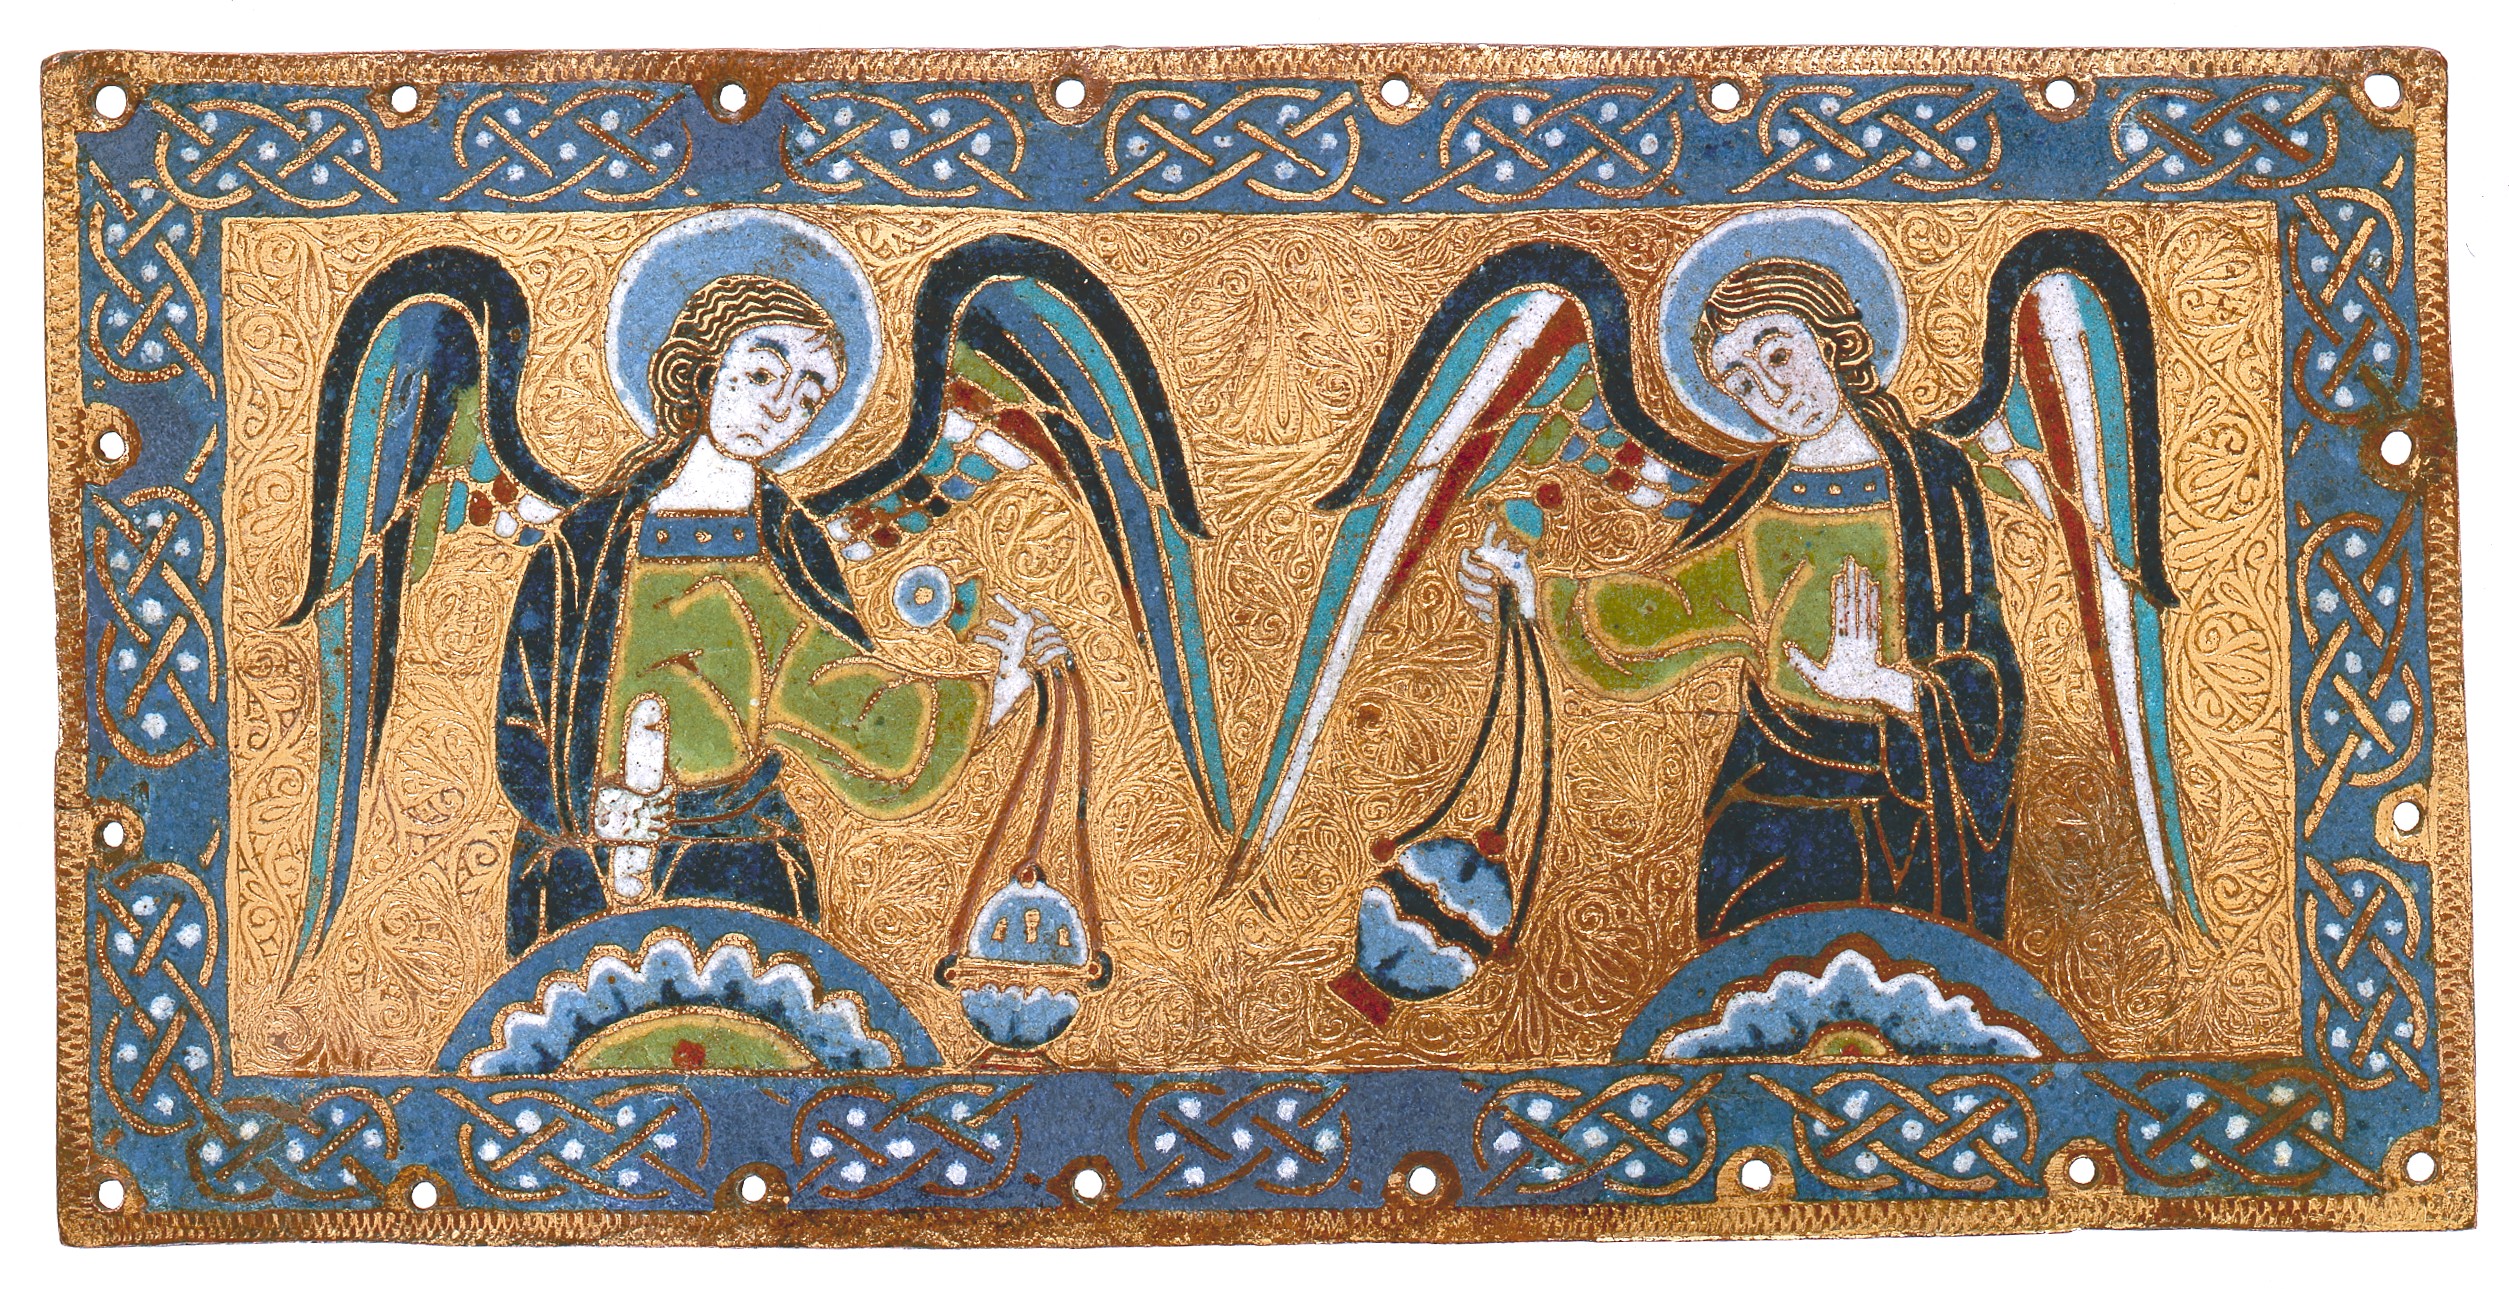 香をたく天使の飾り額 by Unknown Artist - 1170–80年頃 - 11 x 22.1 x 0.3 cm 